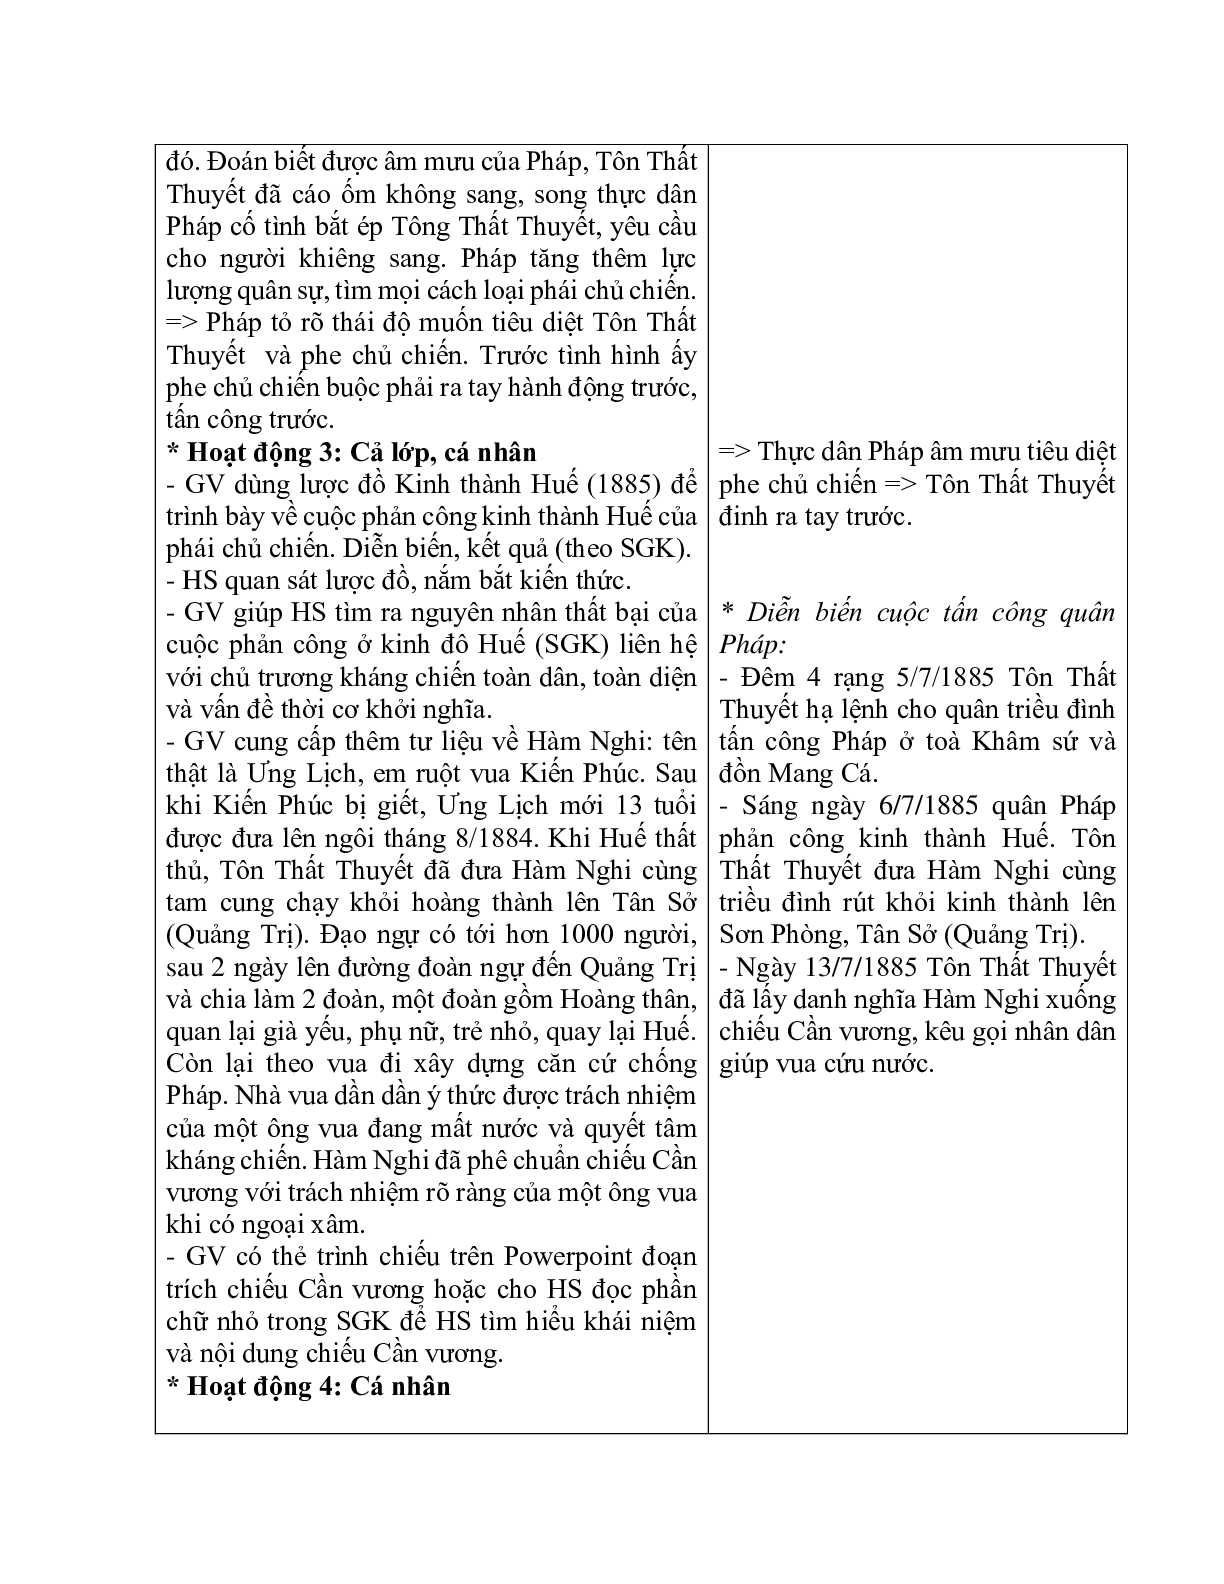 Giáo án Lịch sử 11 Bài 21 phong trào yêu nước chống Pháp của nhân dân Việt Nam trong những năm cuối thế kỉ XIX mới nhất (trang 4)